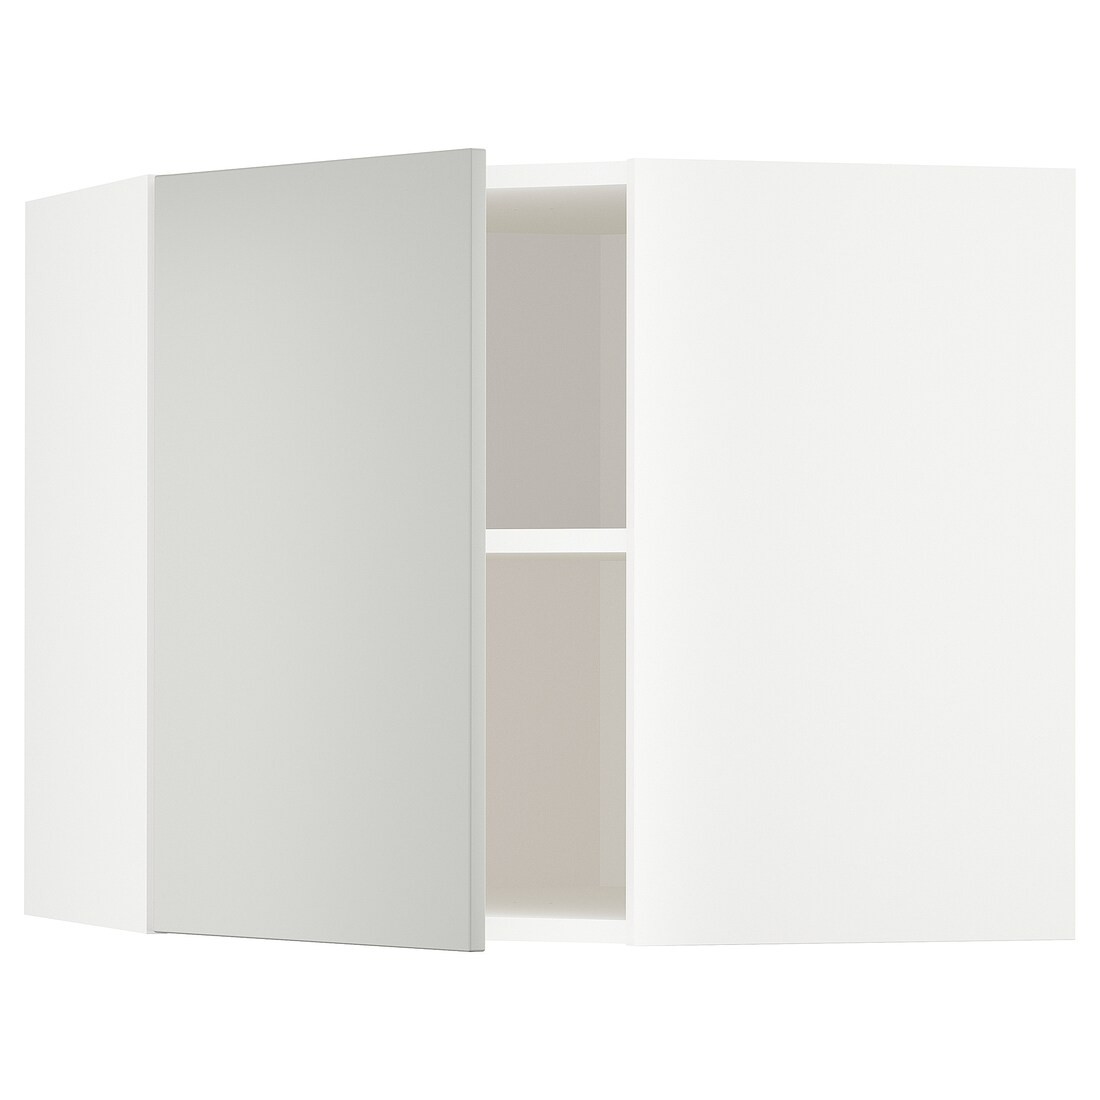 METOD Угловой навесной шкаф с полками, белый / Хавсторп светло-серый, 68x60 см